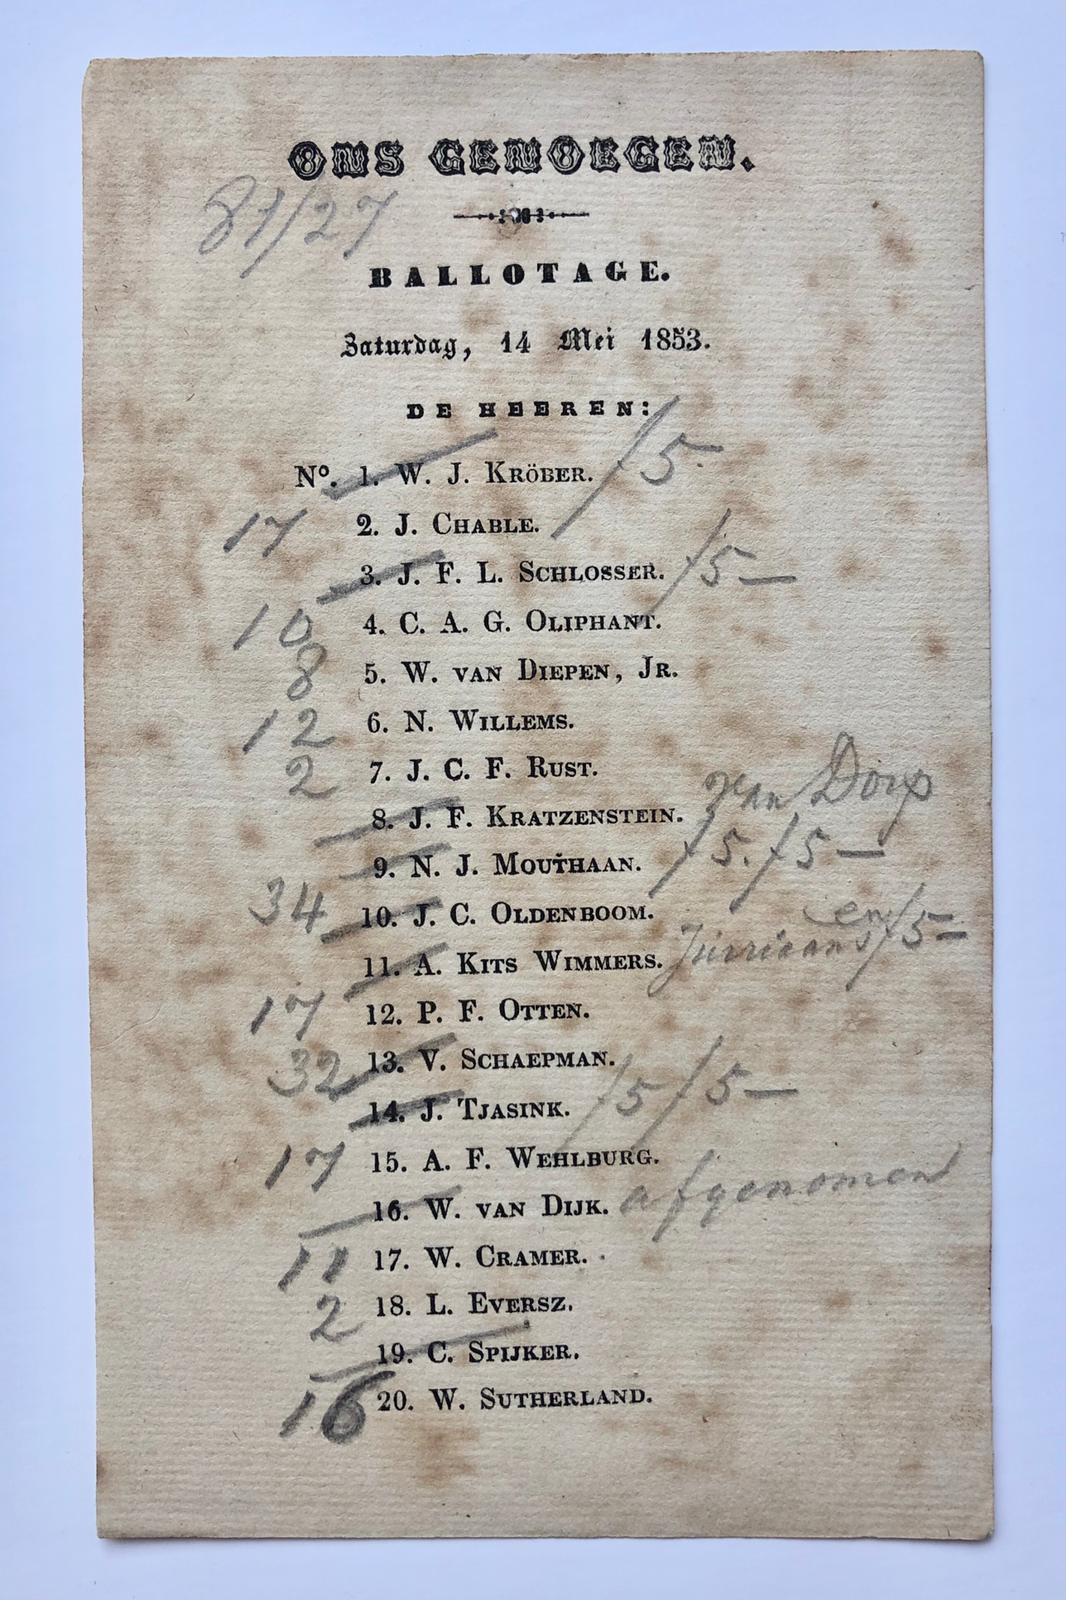  - [Amsterdam, Ons Genoegen, Ballotage, 1853] Gedrukt ballotage-biljet van societeit 'Ons Genoegen' dd. 14-5-1853, 1 blad met 20 namen met aantekeningen in potlood.